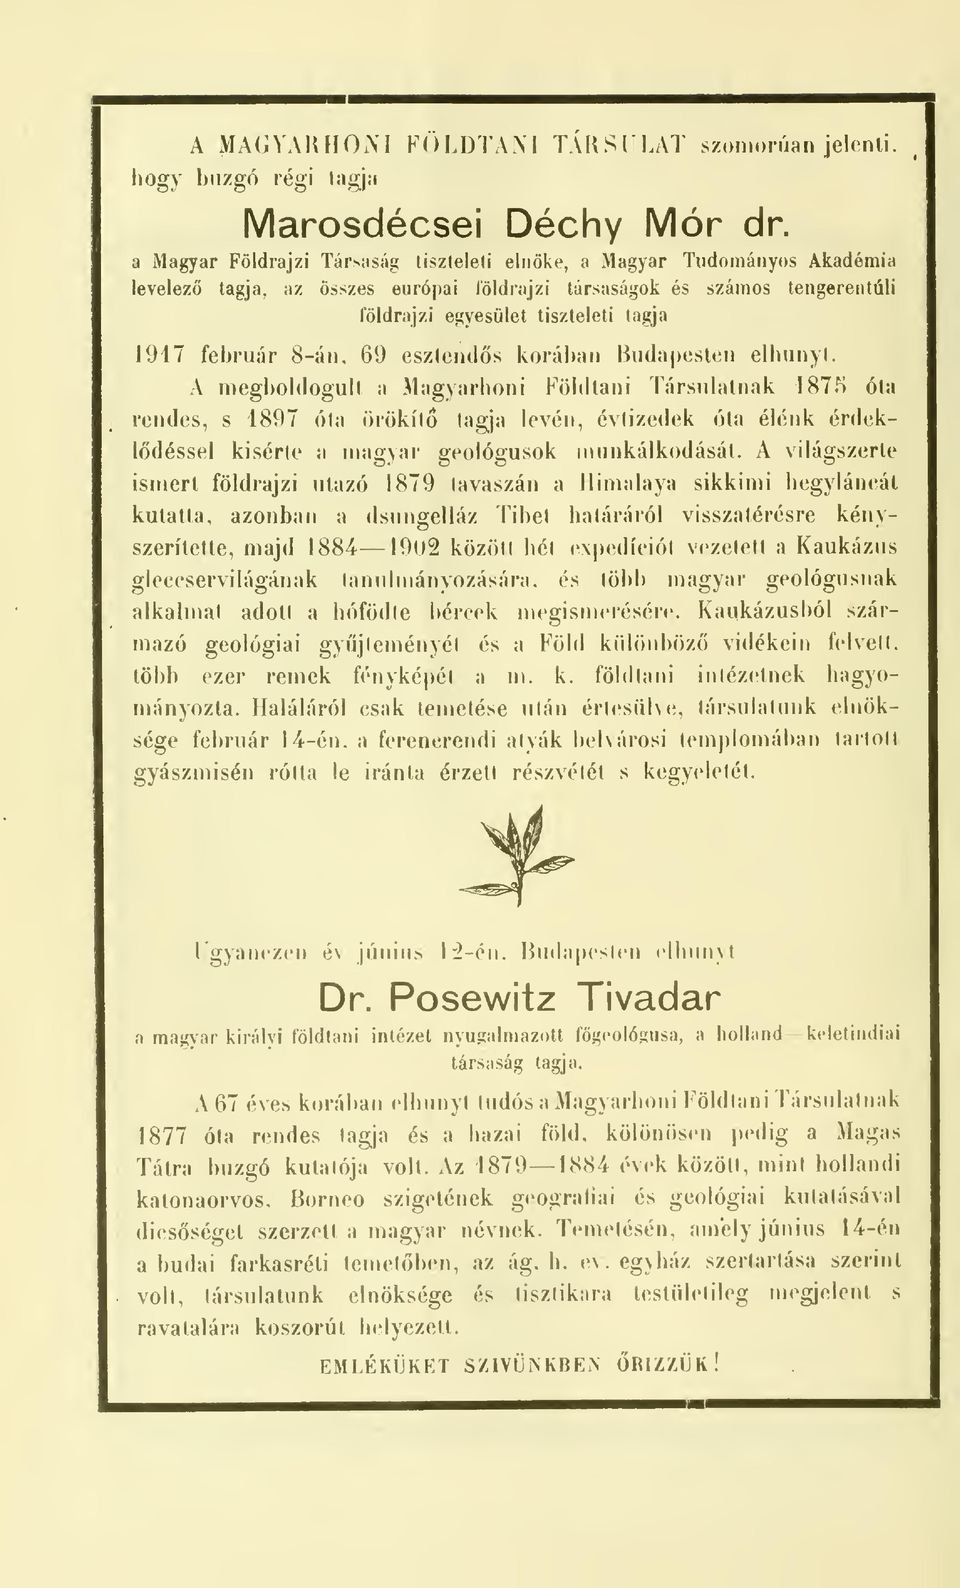 A megboldogult a Magyarhoni Földtani Társulatnak 1875 óta rendes, s 1897 óta örökít tagja levén, évtizedek óta élénk érdekldéssel kisérte a magyar geológusok munkálkodását.